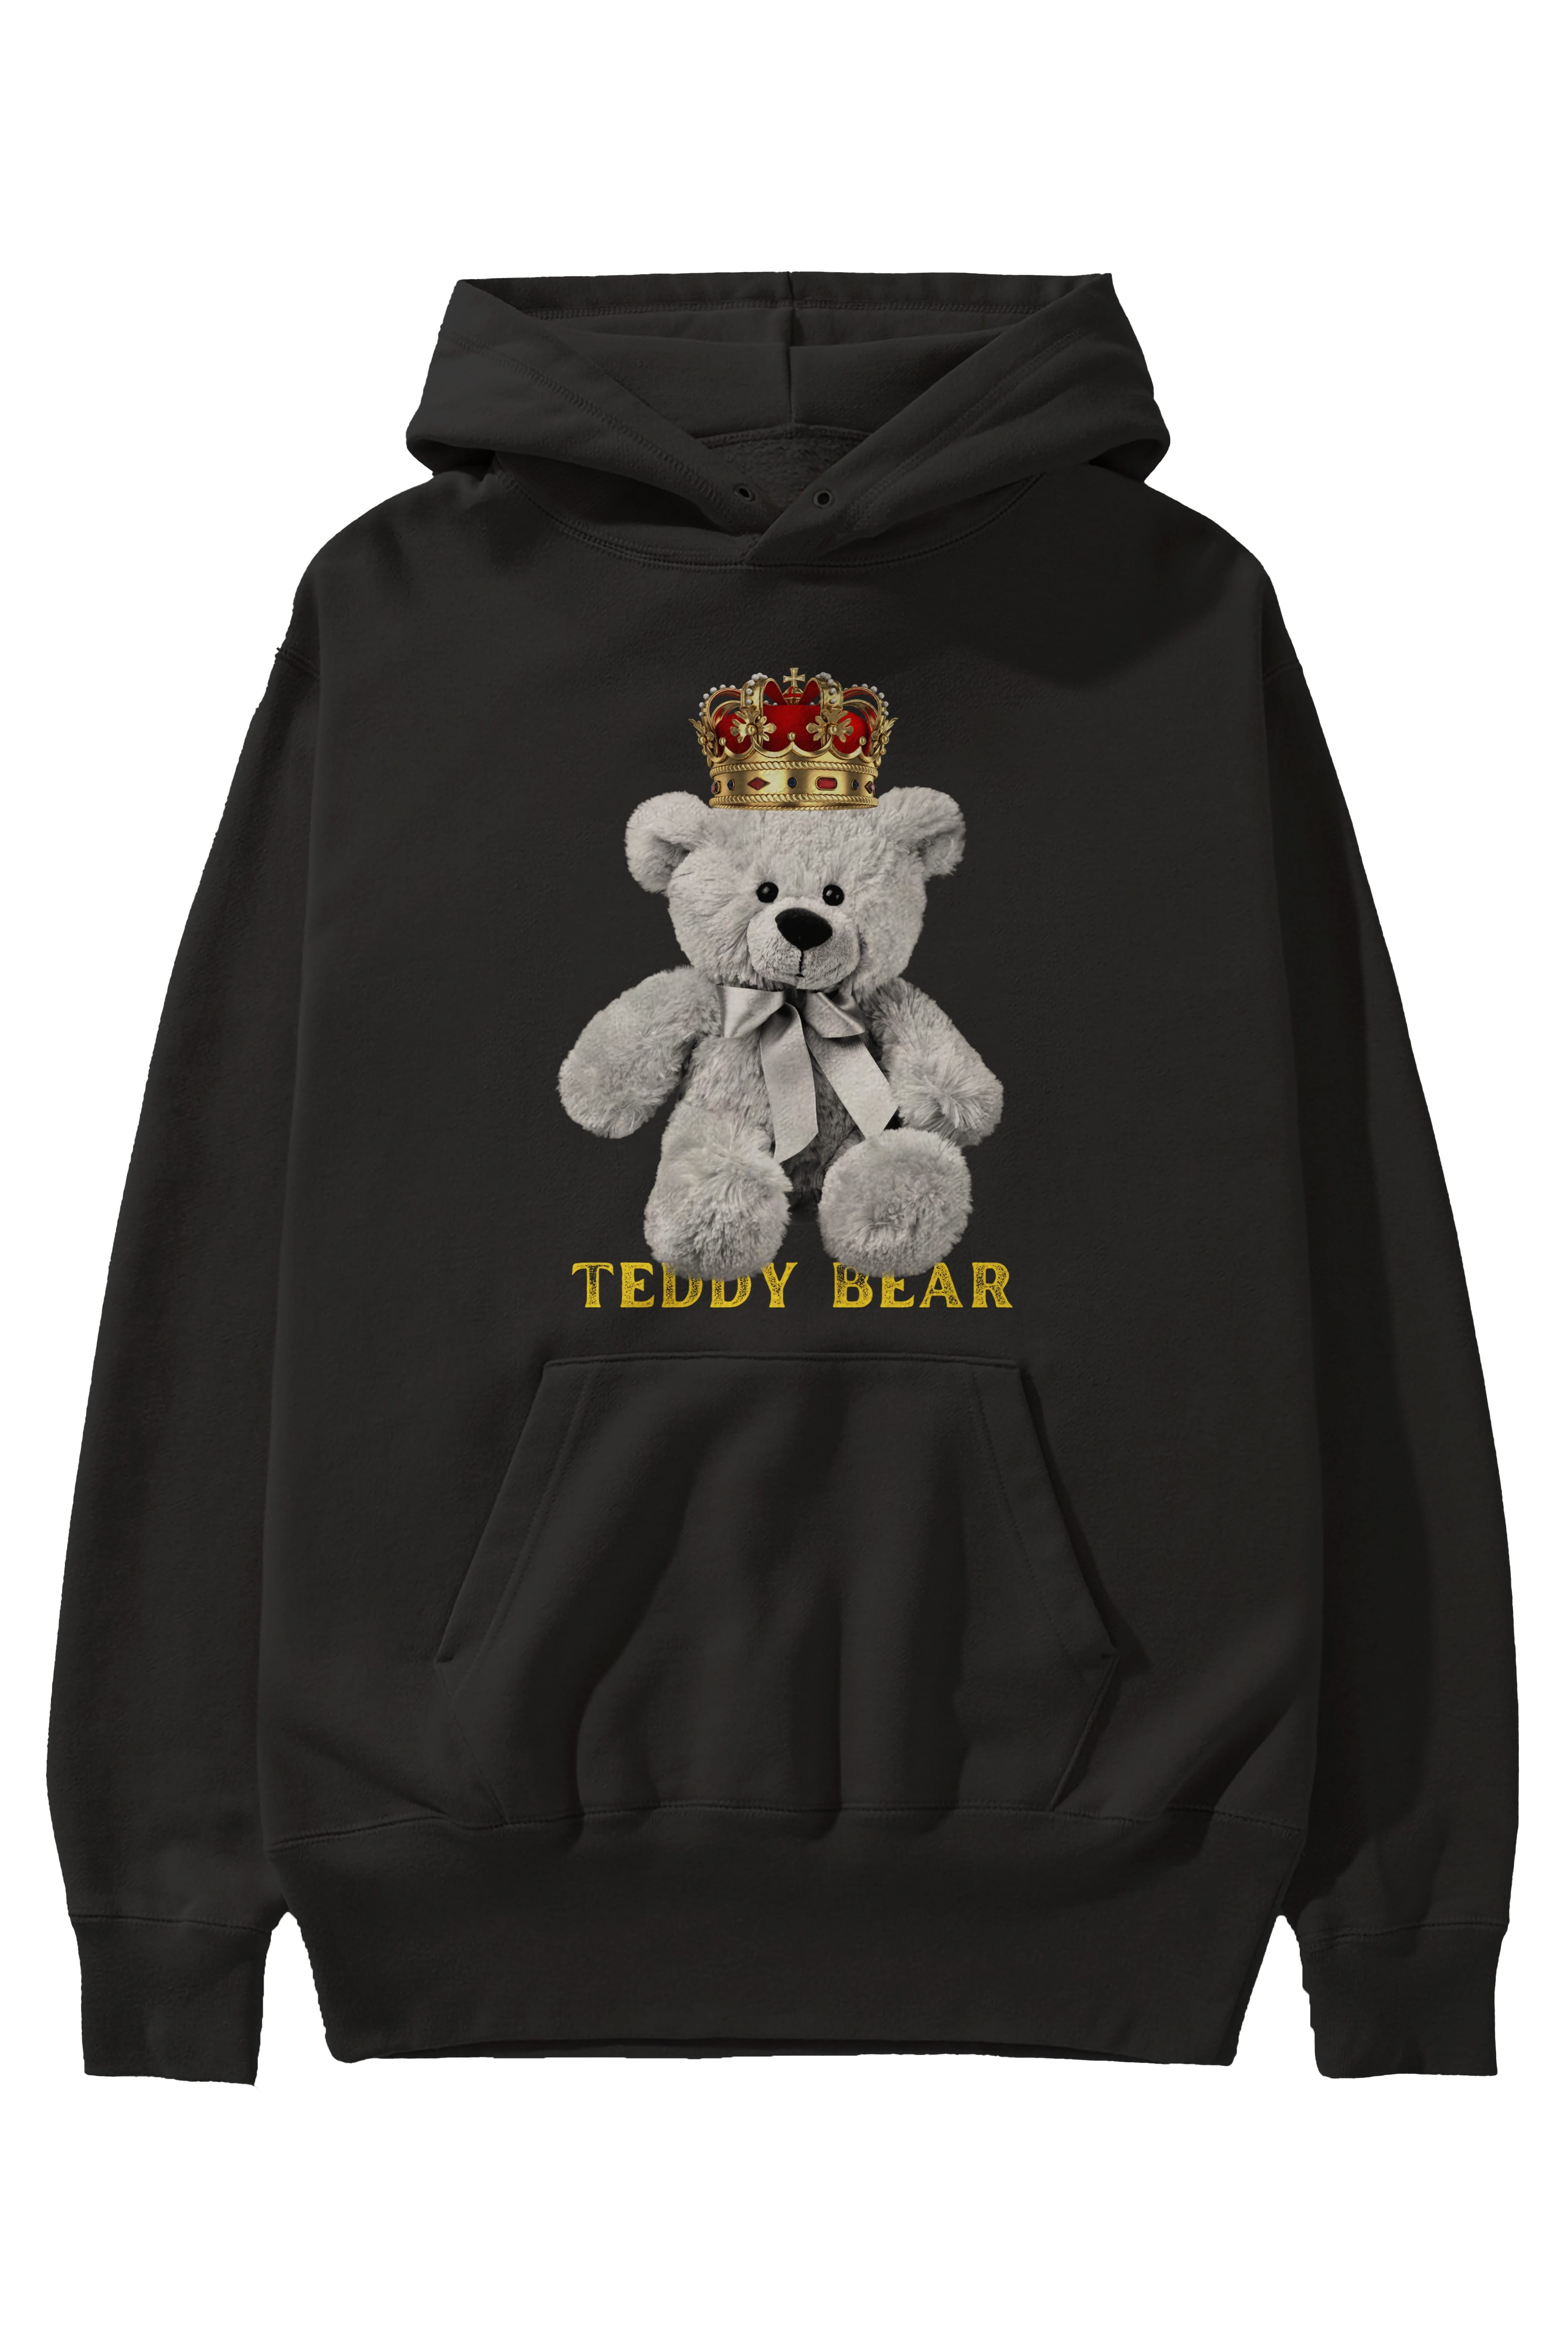 Teddy Bear Ön Baskılı Oversize Hoodie Kapüşonlu Sweatshirt Erkek Kadın Unisex